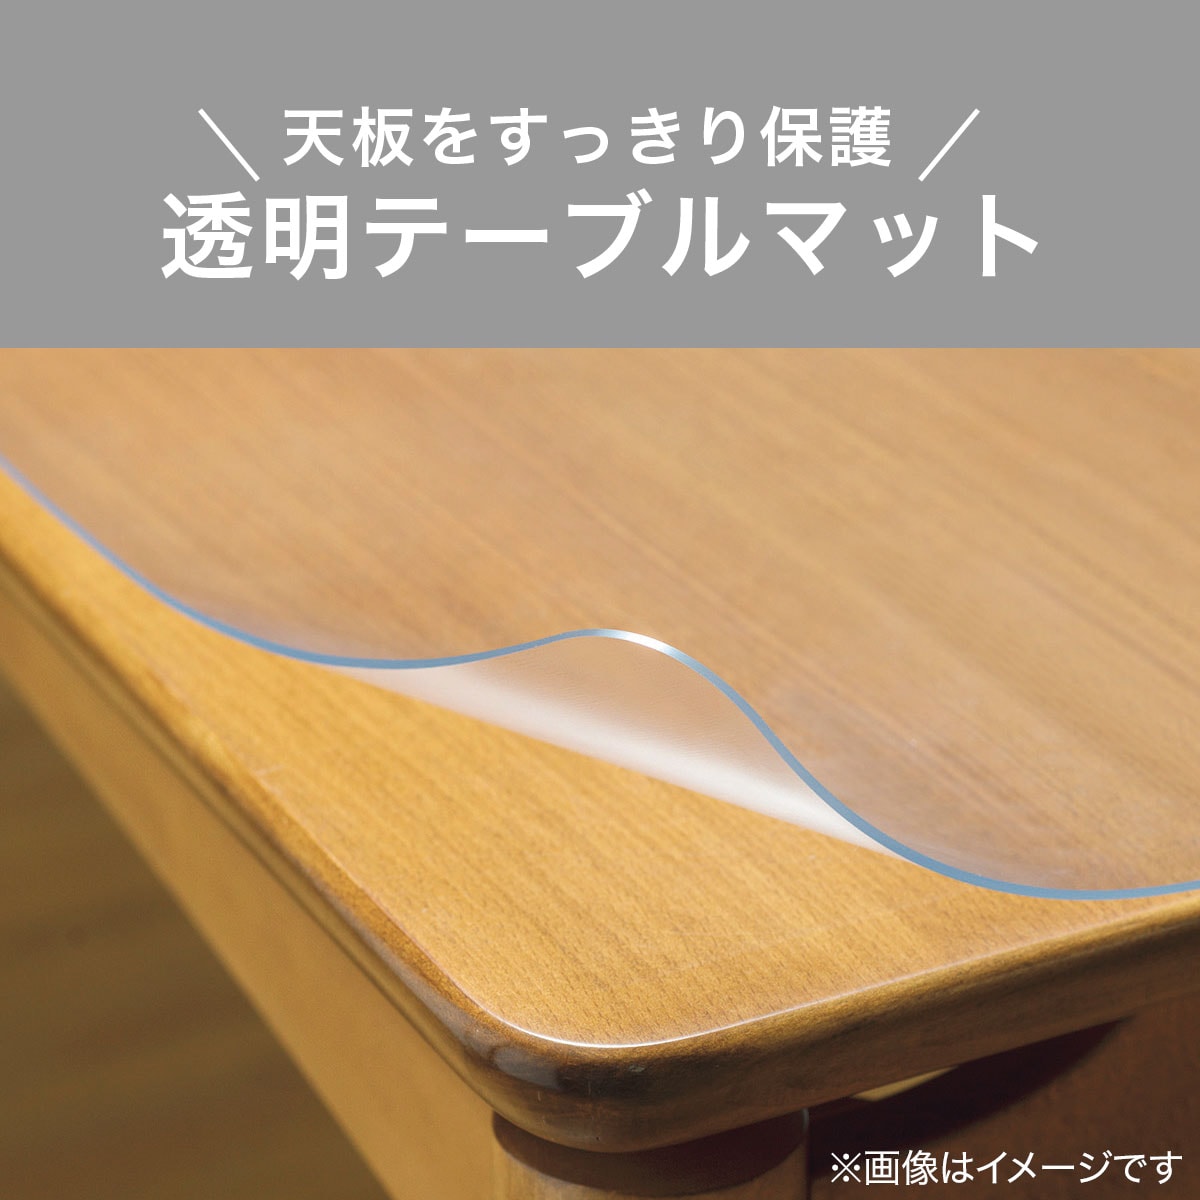 テーブルクロス 透明 PVC製 80×150cm 厚さ1.5mm 防水 耐熱